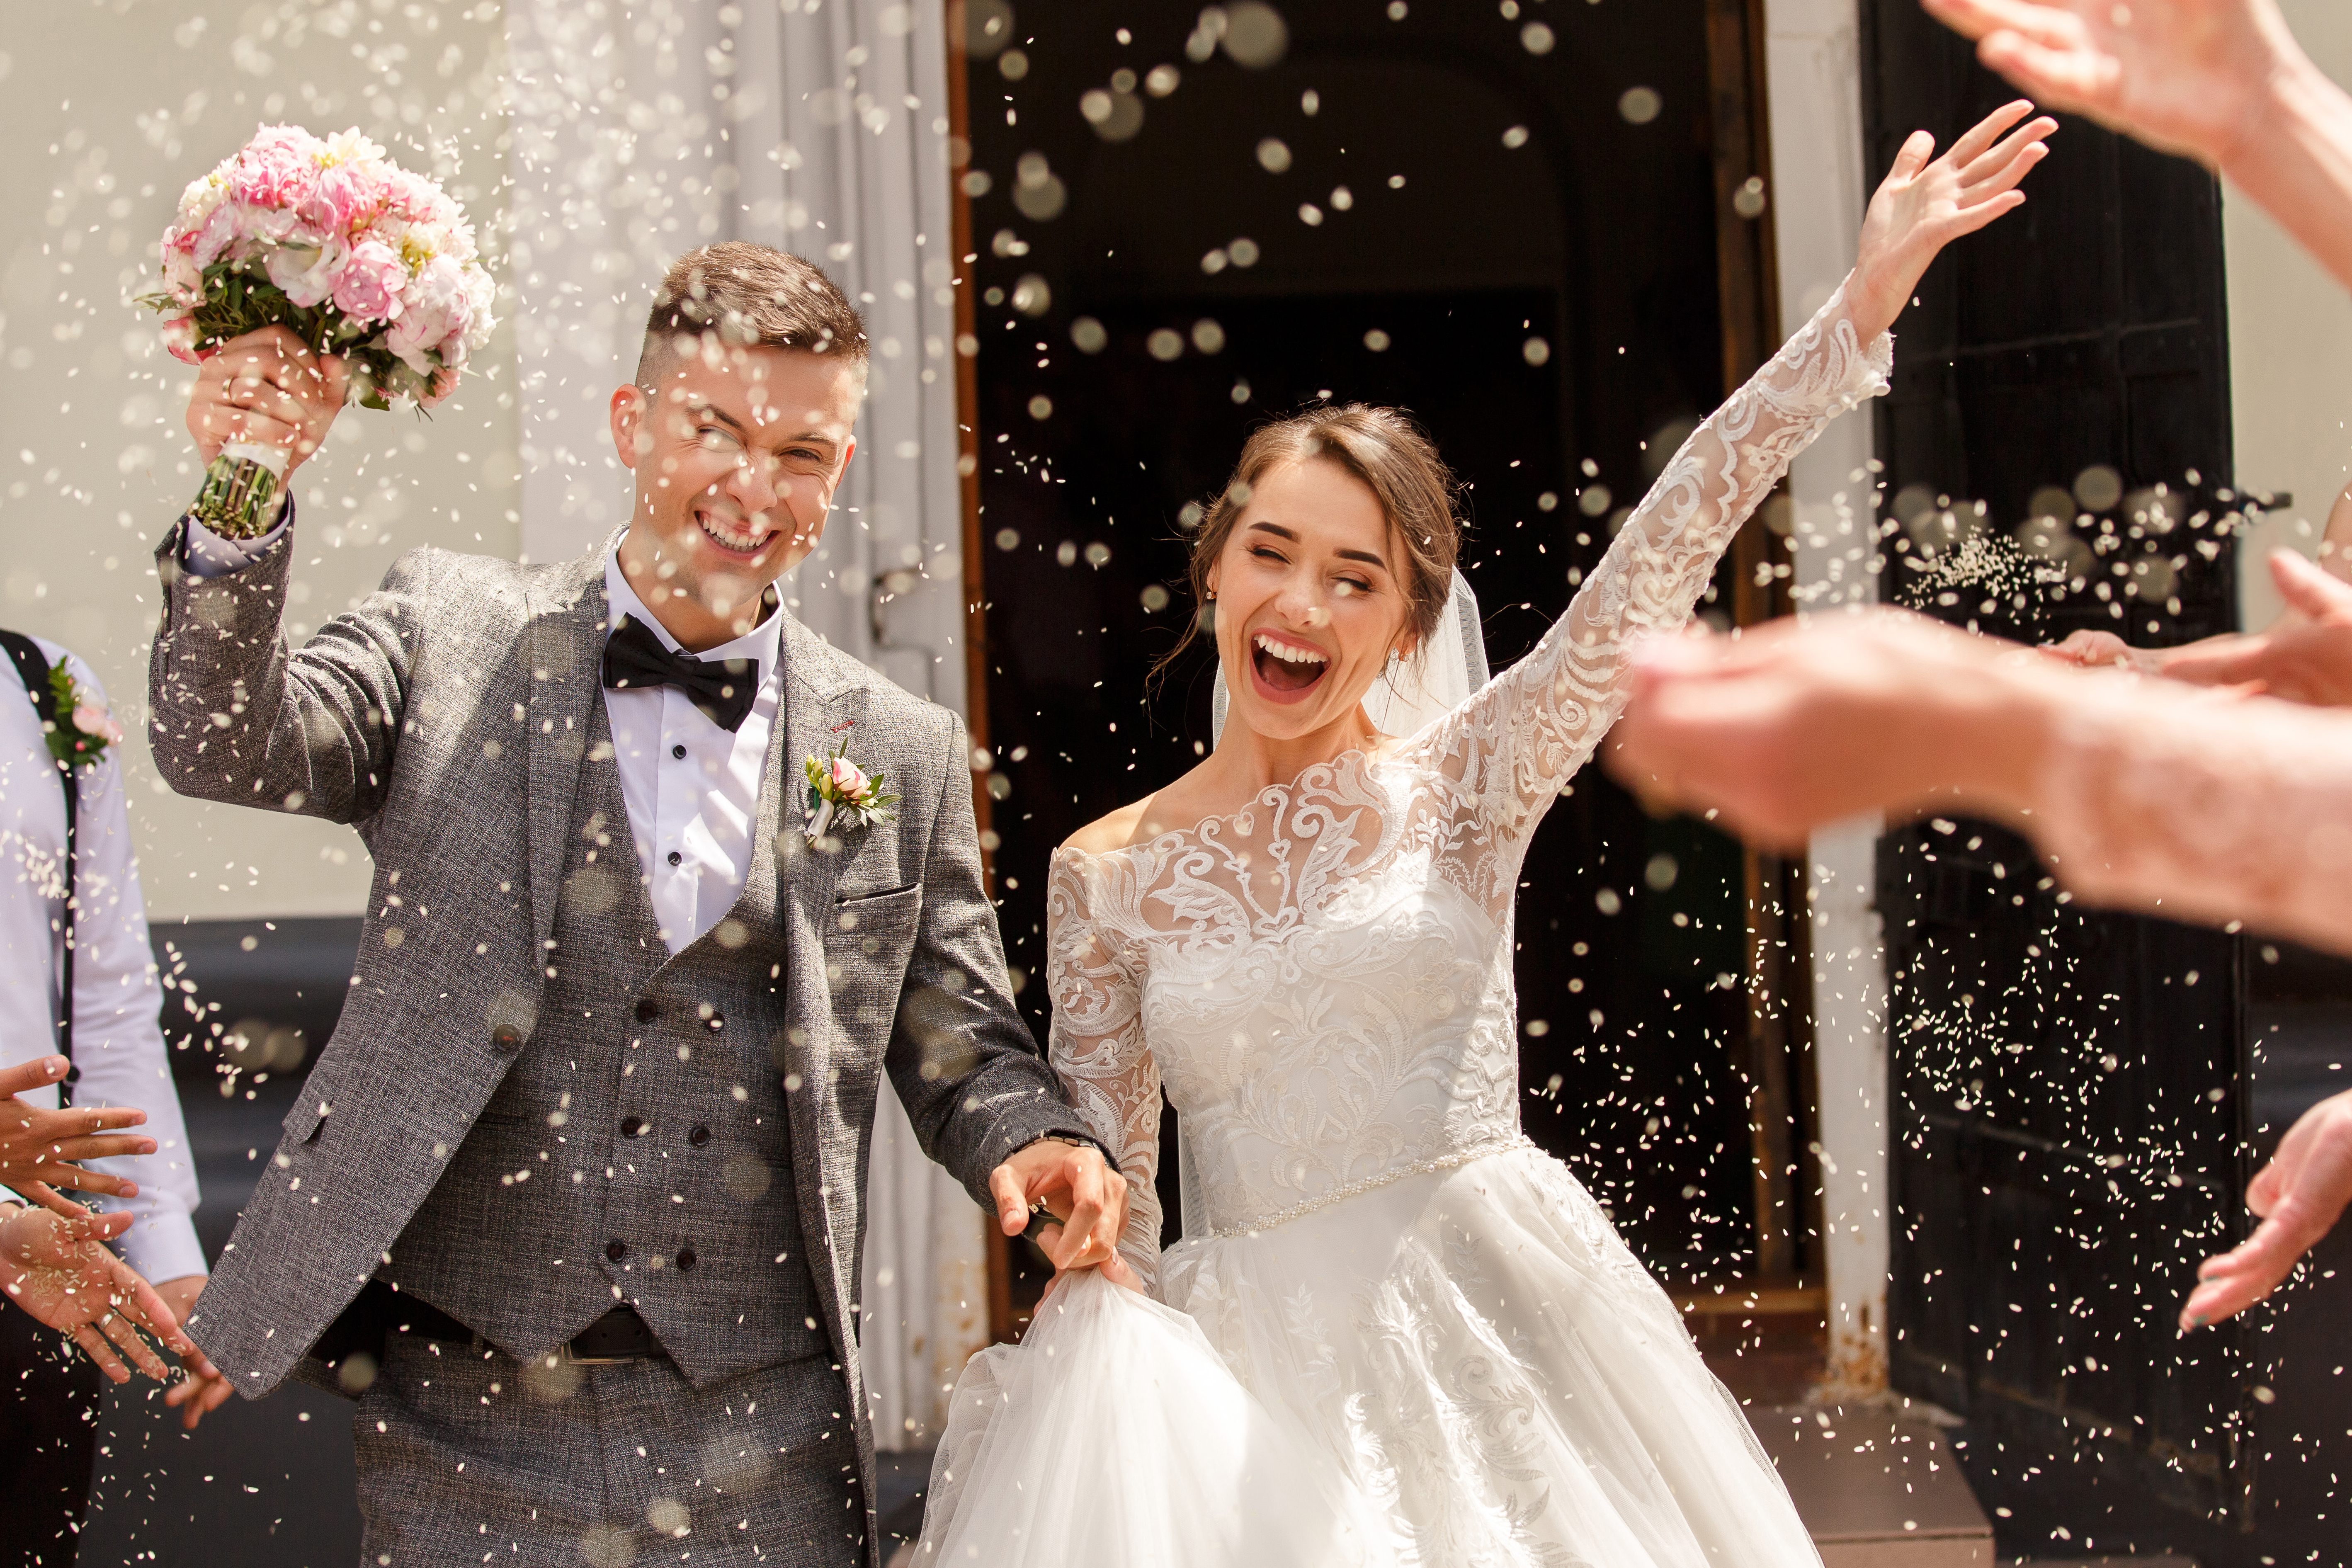 Glückliche Braut und Bräutigam auf der Hochzeit | Quelle: Shutterstock